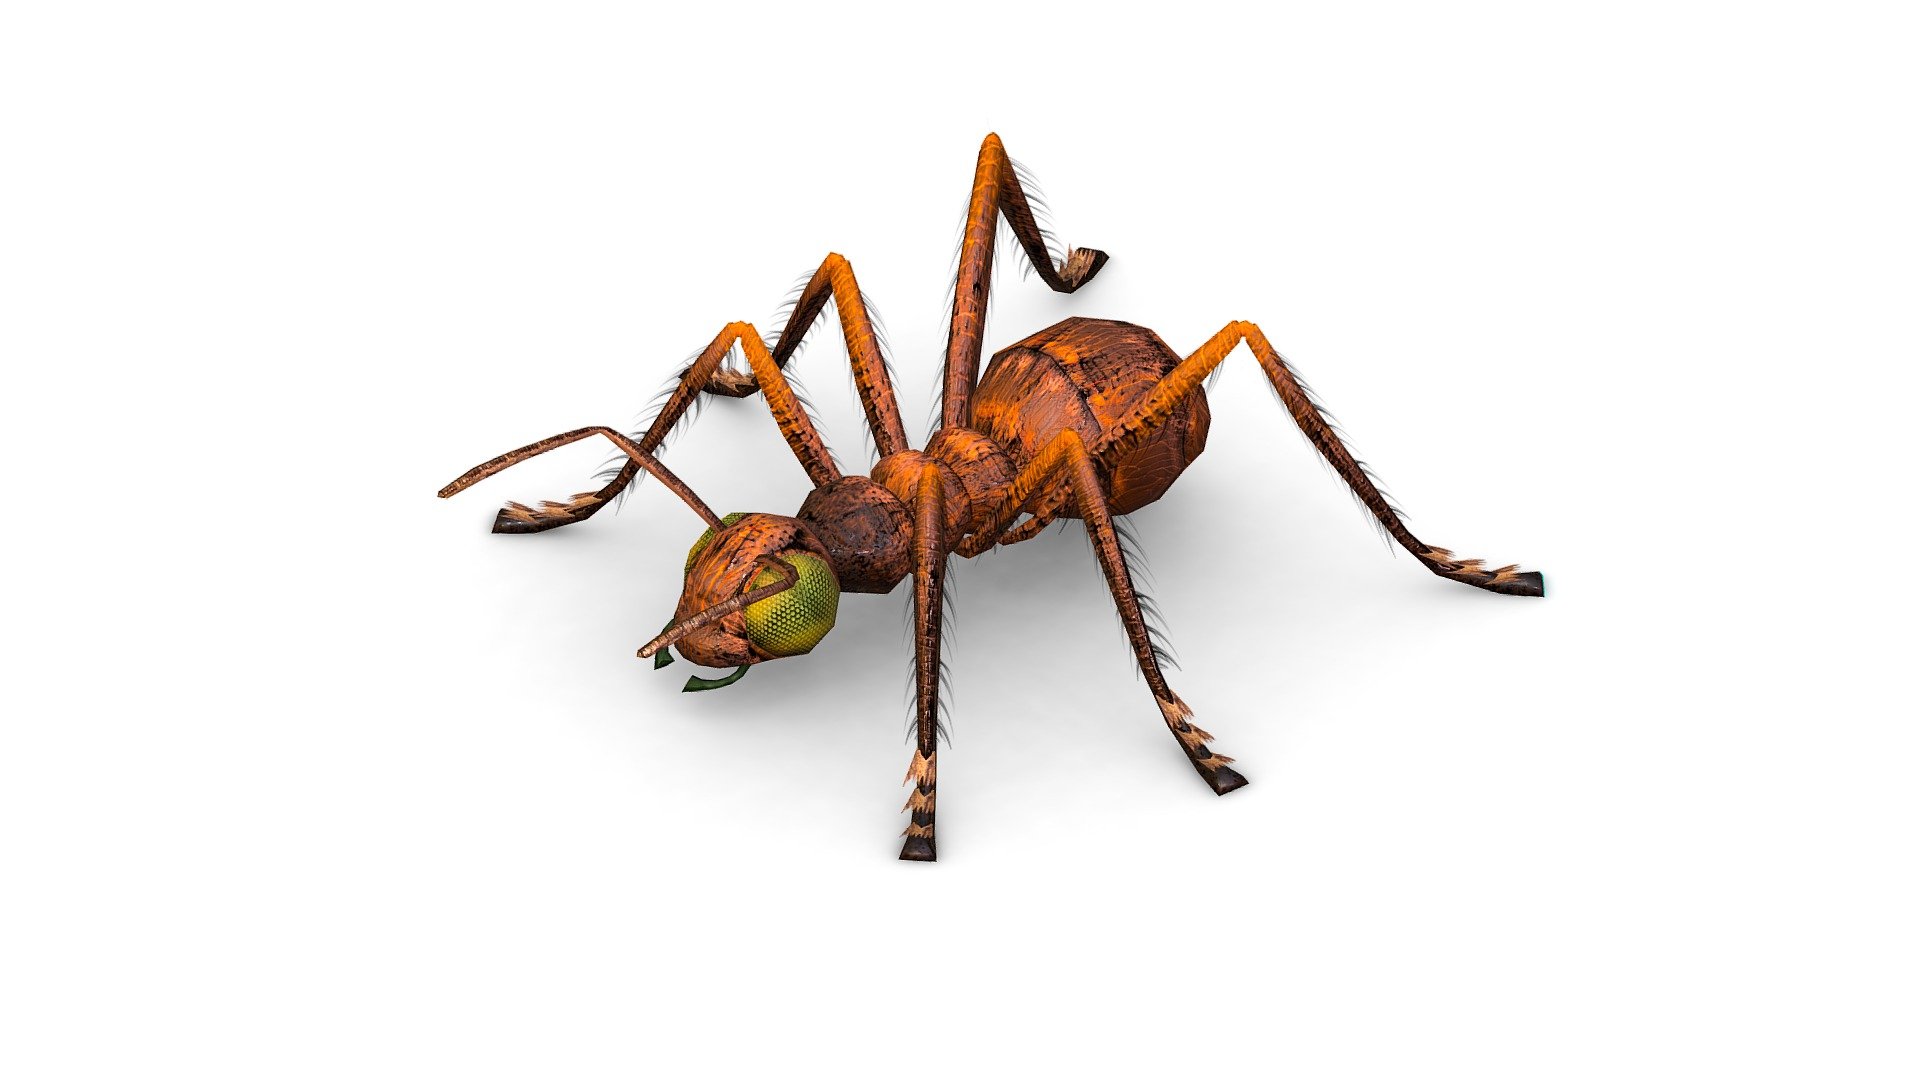 LowPoly Giant Crimson Ant, 1024x1024 texture size (nirmal,difuse,specular) - LowPoly Giant Crimson Ant - Buy Royalty Free 3D model by Oleg Shuldiakov (@olegshuldiakov) 3d model